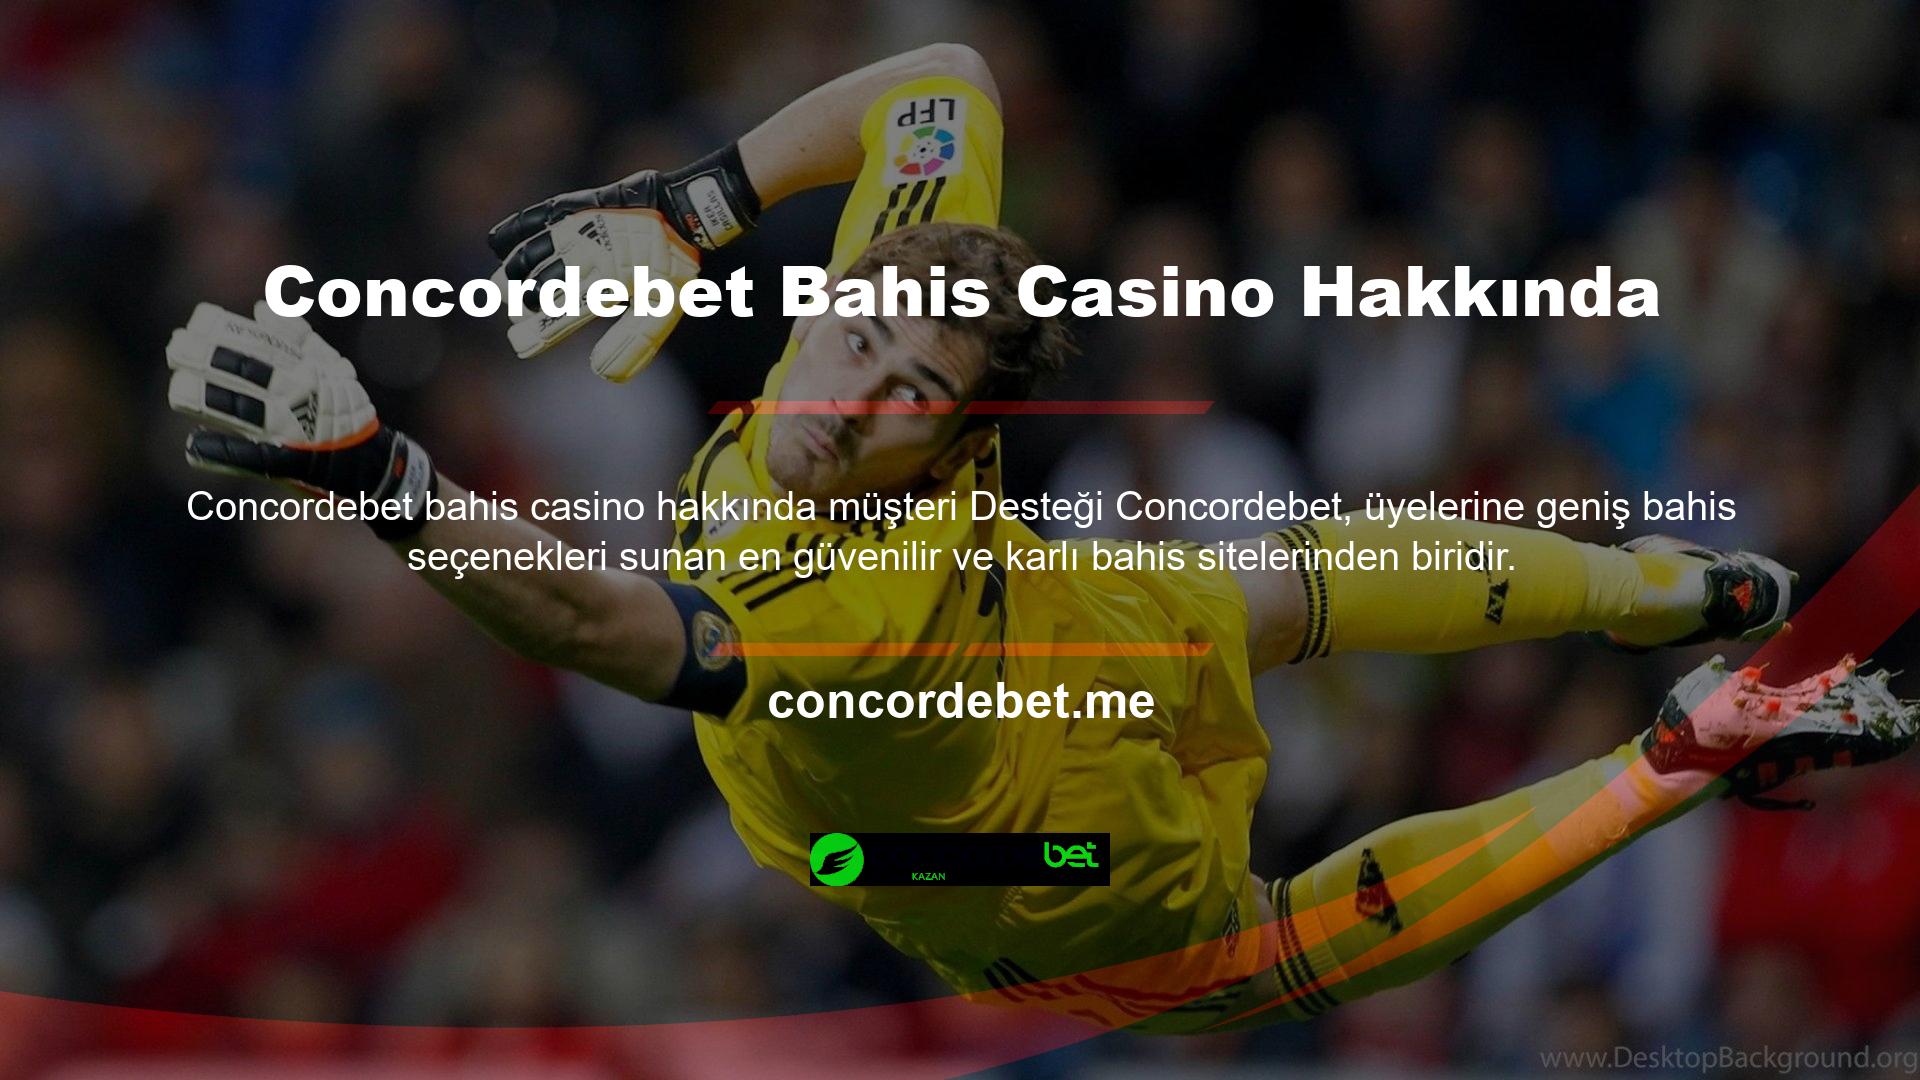 Bahis sitesinin üyelerine sunduğu Concordebet Bahis Casino müşteri hizmetleri seçenekleri şunları içerir:

	Futbol Maçları
	Casino Oyunları
	Yarış
	NBA Oyunları

Genel olarak futbol bahisleri, spor müsabakaları alanında oyuncuları zenginleştirir